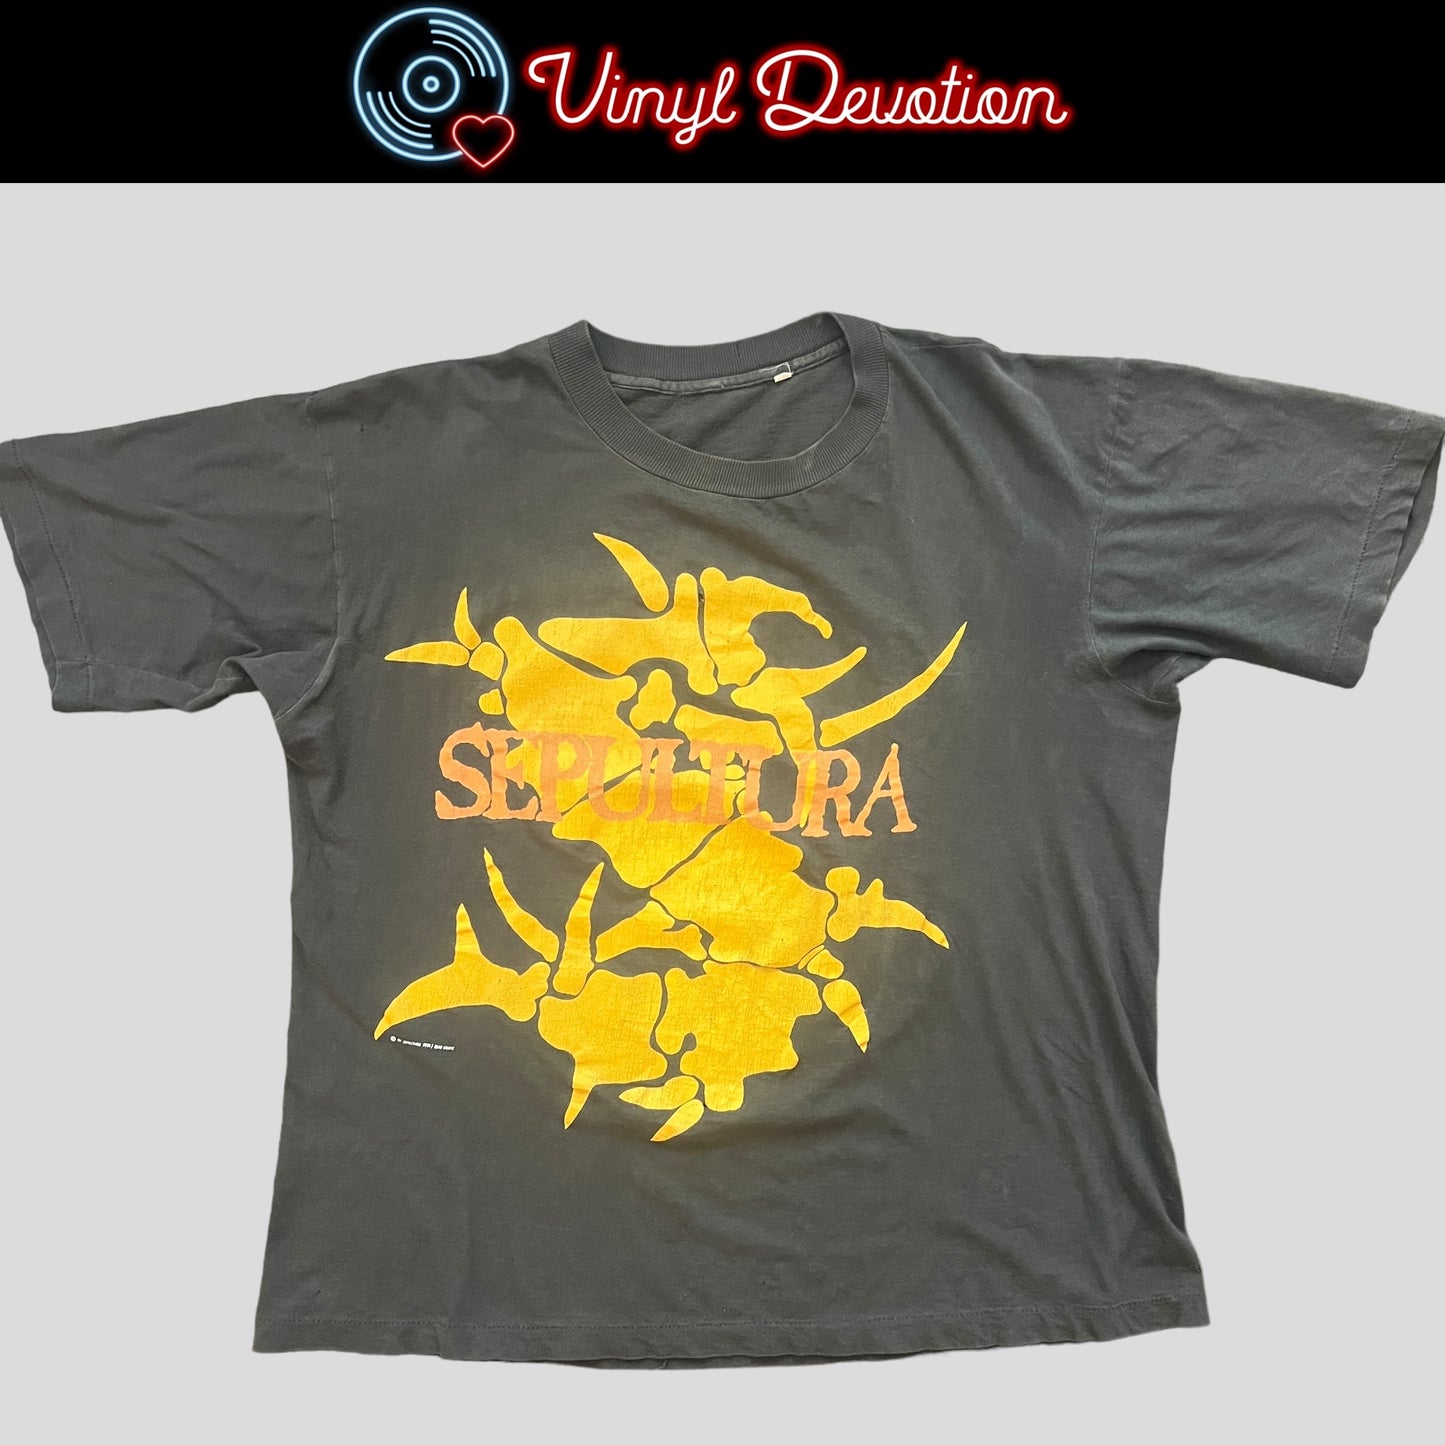 Sepultura Band Arise 1991 America Under Siege Tour Vintage Shirt Size L Single Stitch